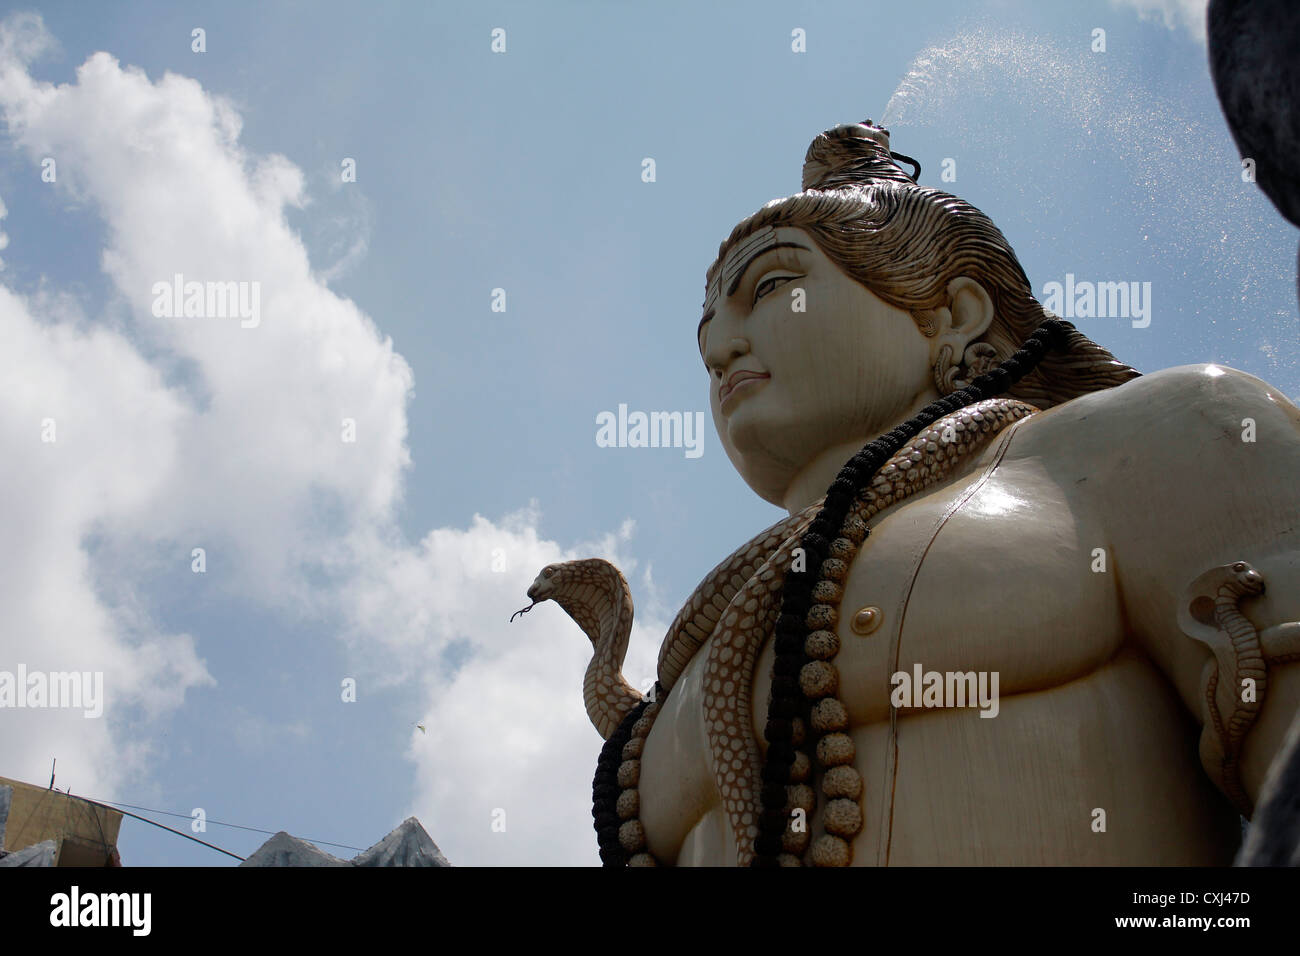 Abschnitt der 65 Fuß hohe Statue des Hindu-Gottes Shiva, die die RVM-Shiva-Tempel in Bangalore, Indien Stockfoto